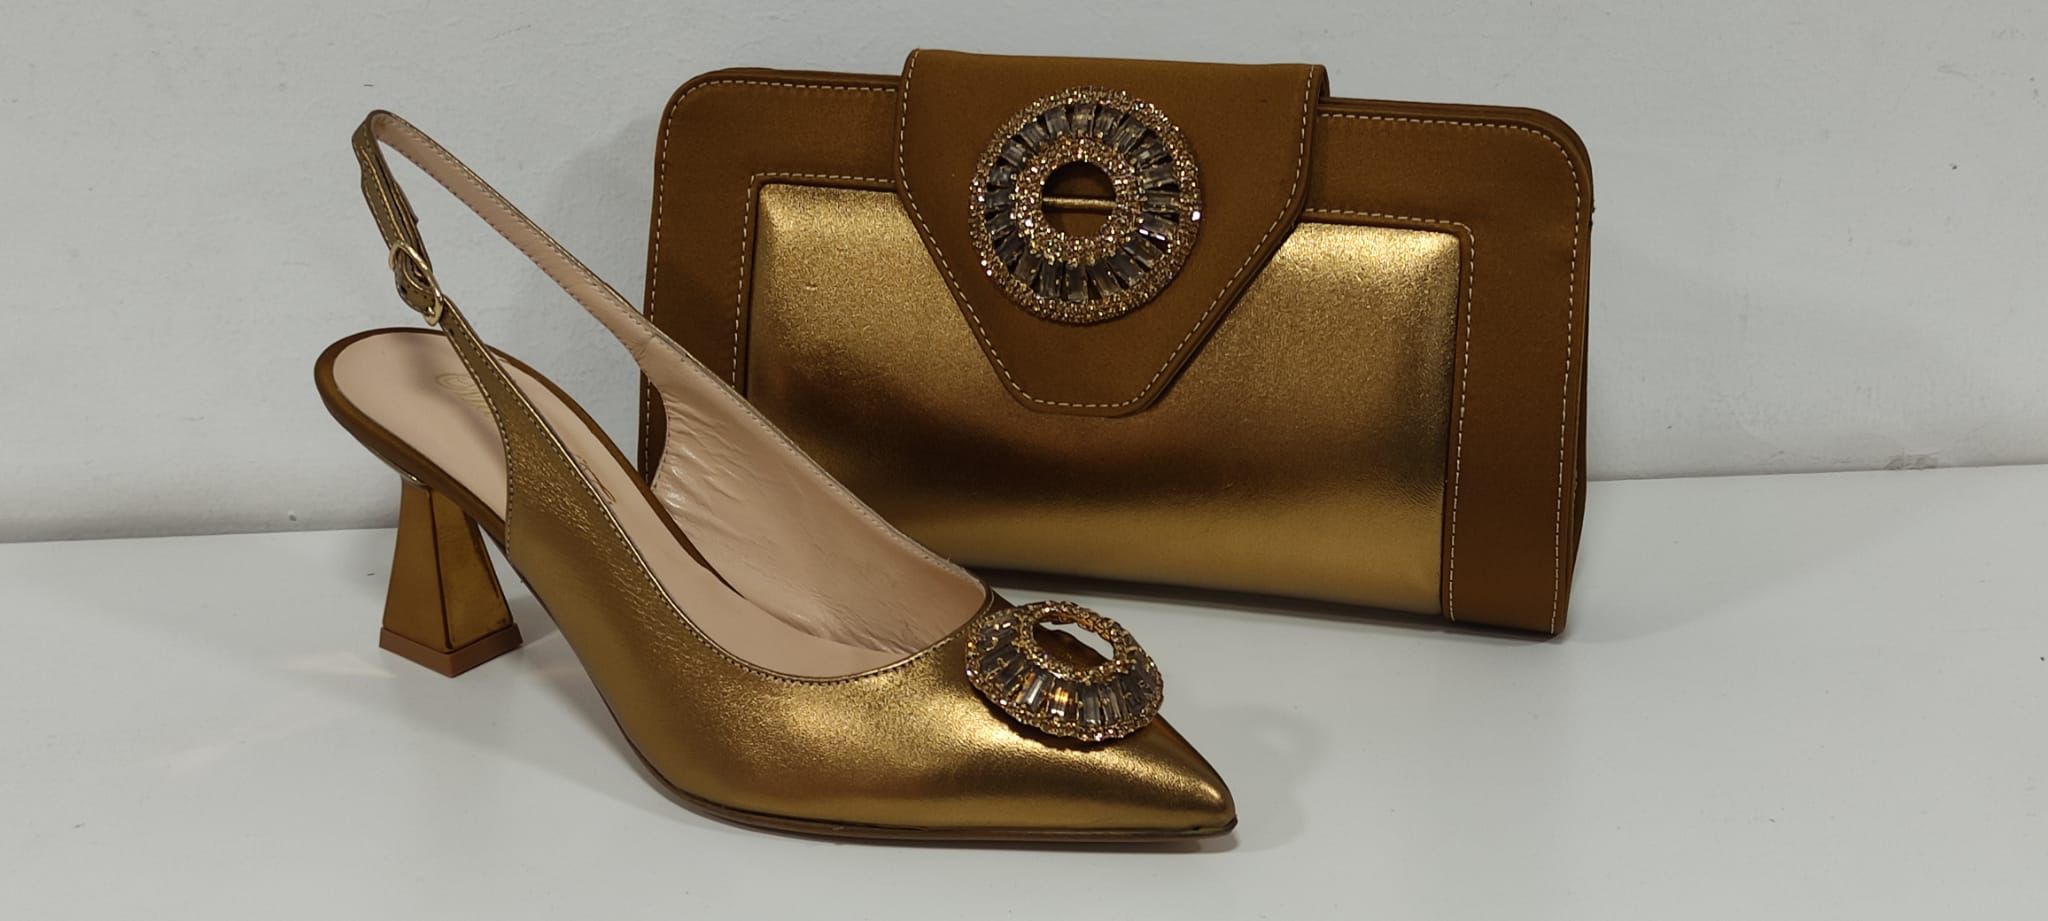 Real italian shoe and bag sets- Godshandfashion - Bronze size 40 US 9 1/2-10